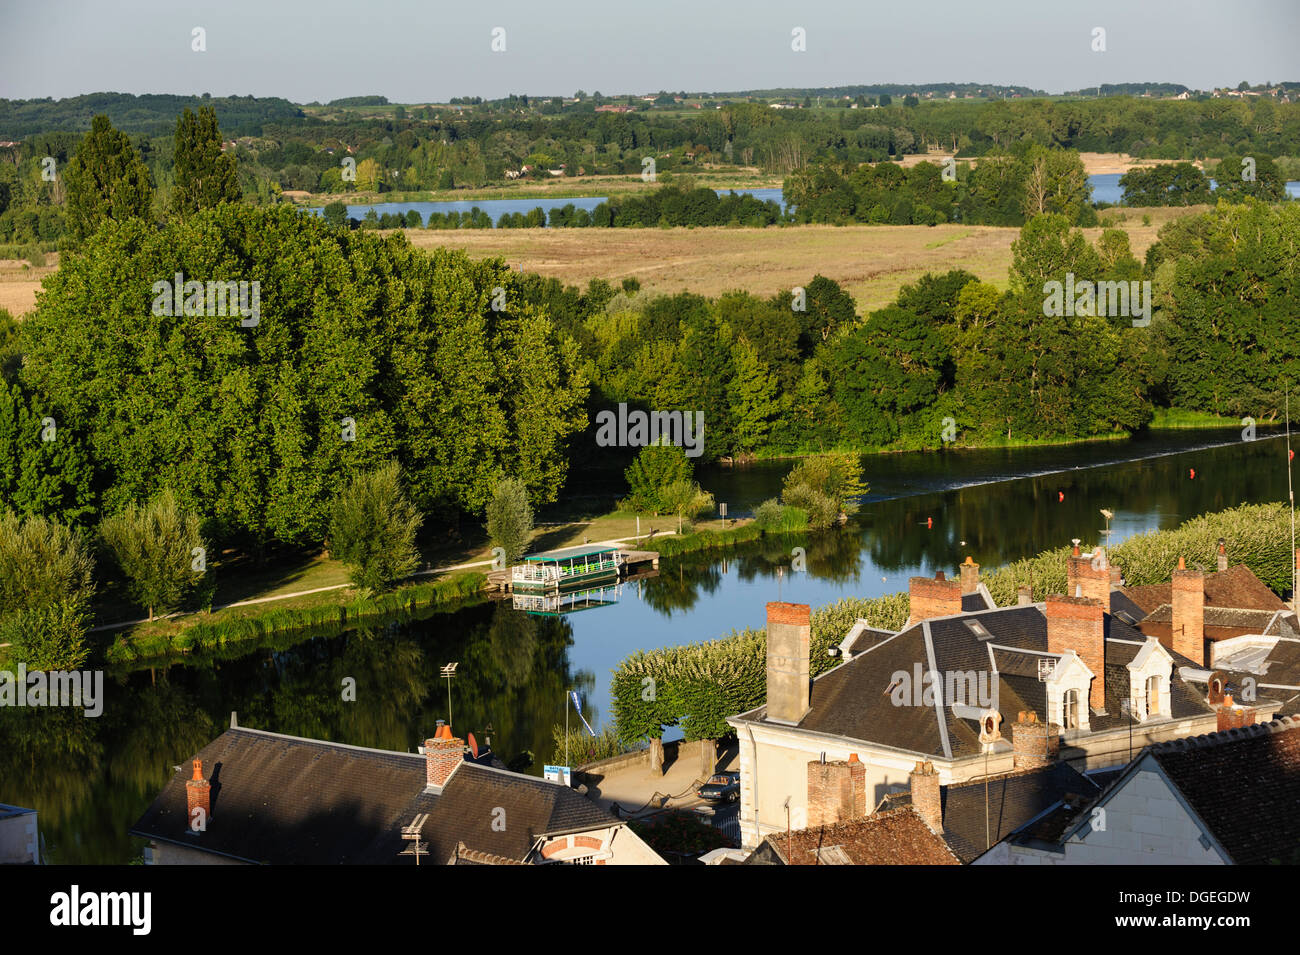 The Cher river, Saint-Aignan sur Cher, Loir-et-Cher, Centre, France Stock Photo